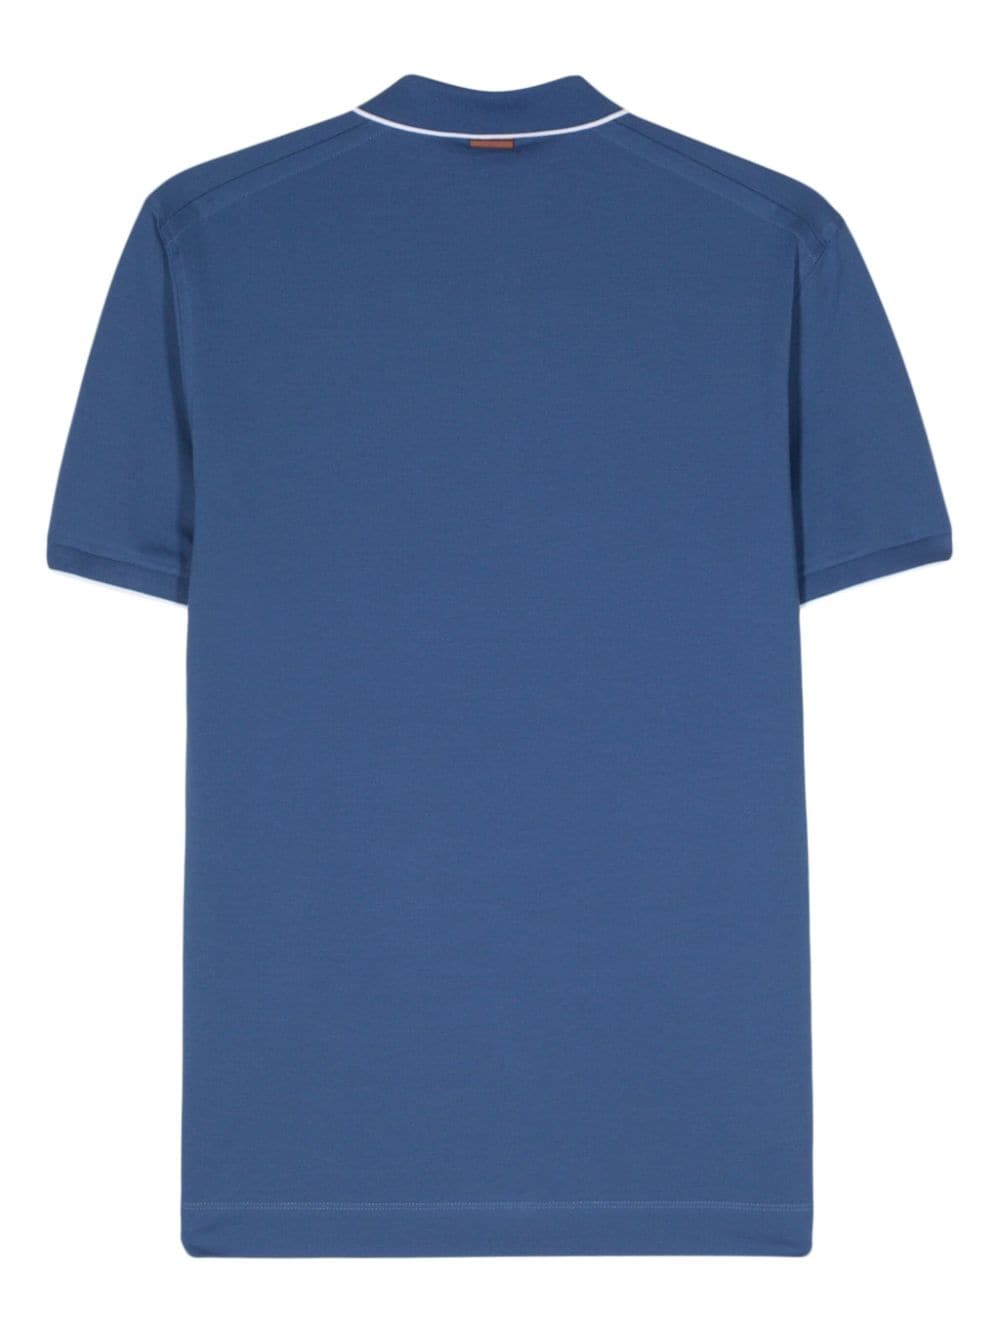 Zegna Poloshirt met geborduurd logo Blauw